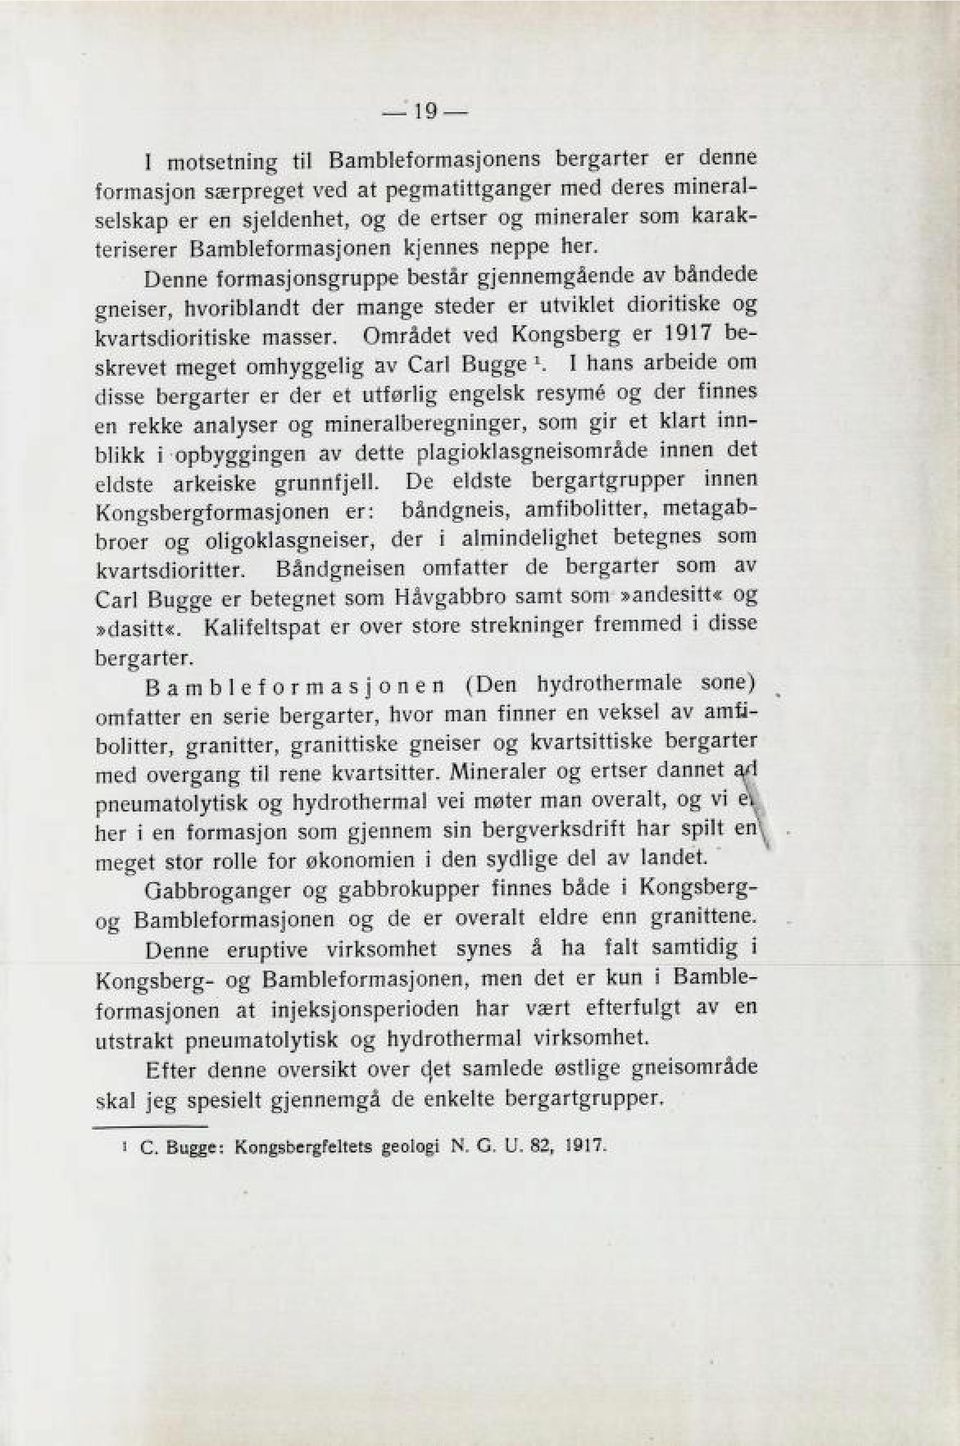 Området ved Kongsberg er 1917 be skrevet meget omhyggelig av Carl Bugge l.